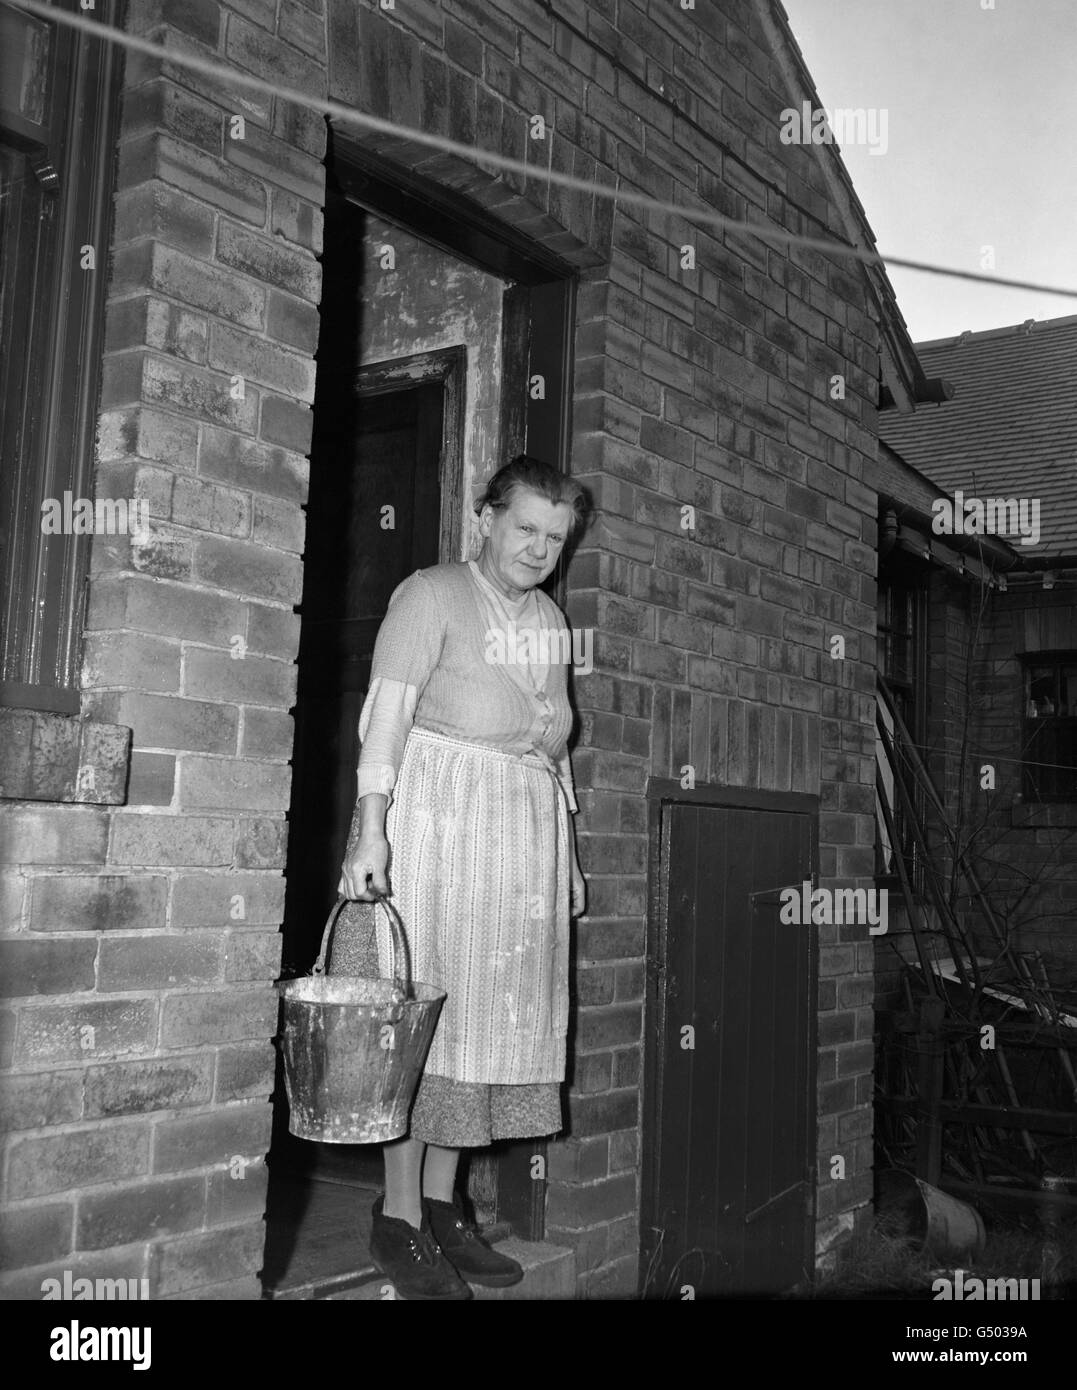 Mary Elizabeth Wilson, reconnue coupable de plusieurs meurtres, a été condamnée à mort en 1958. La peine a été commuée par la suite en emprisonnement à vie. Banque D'Images